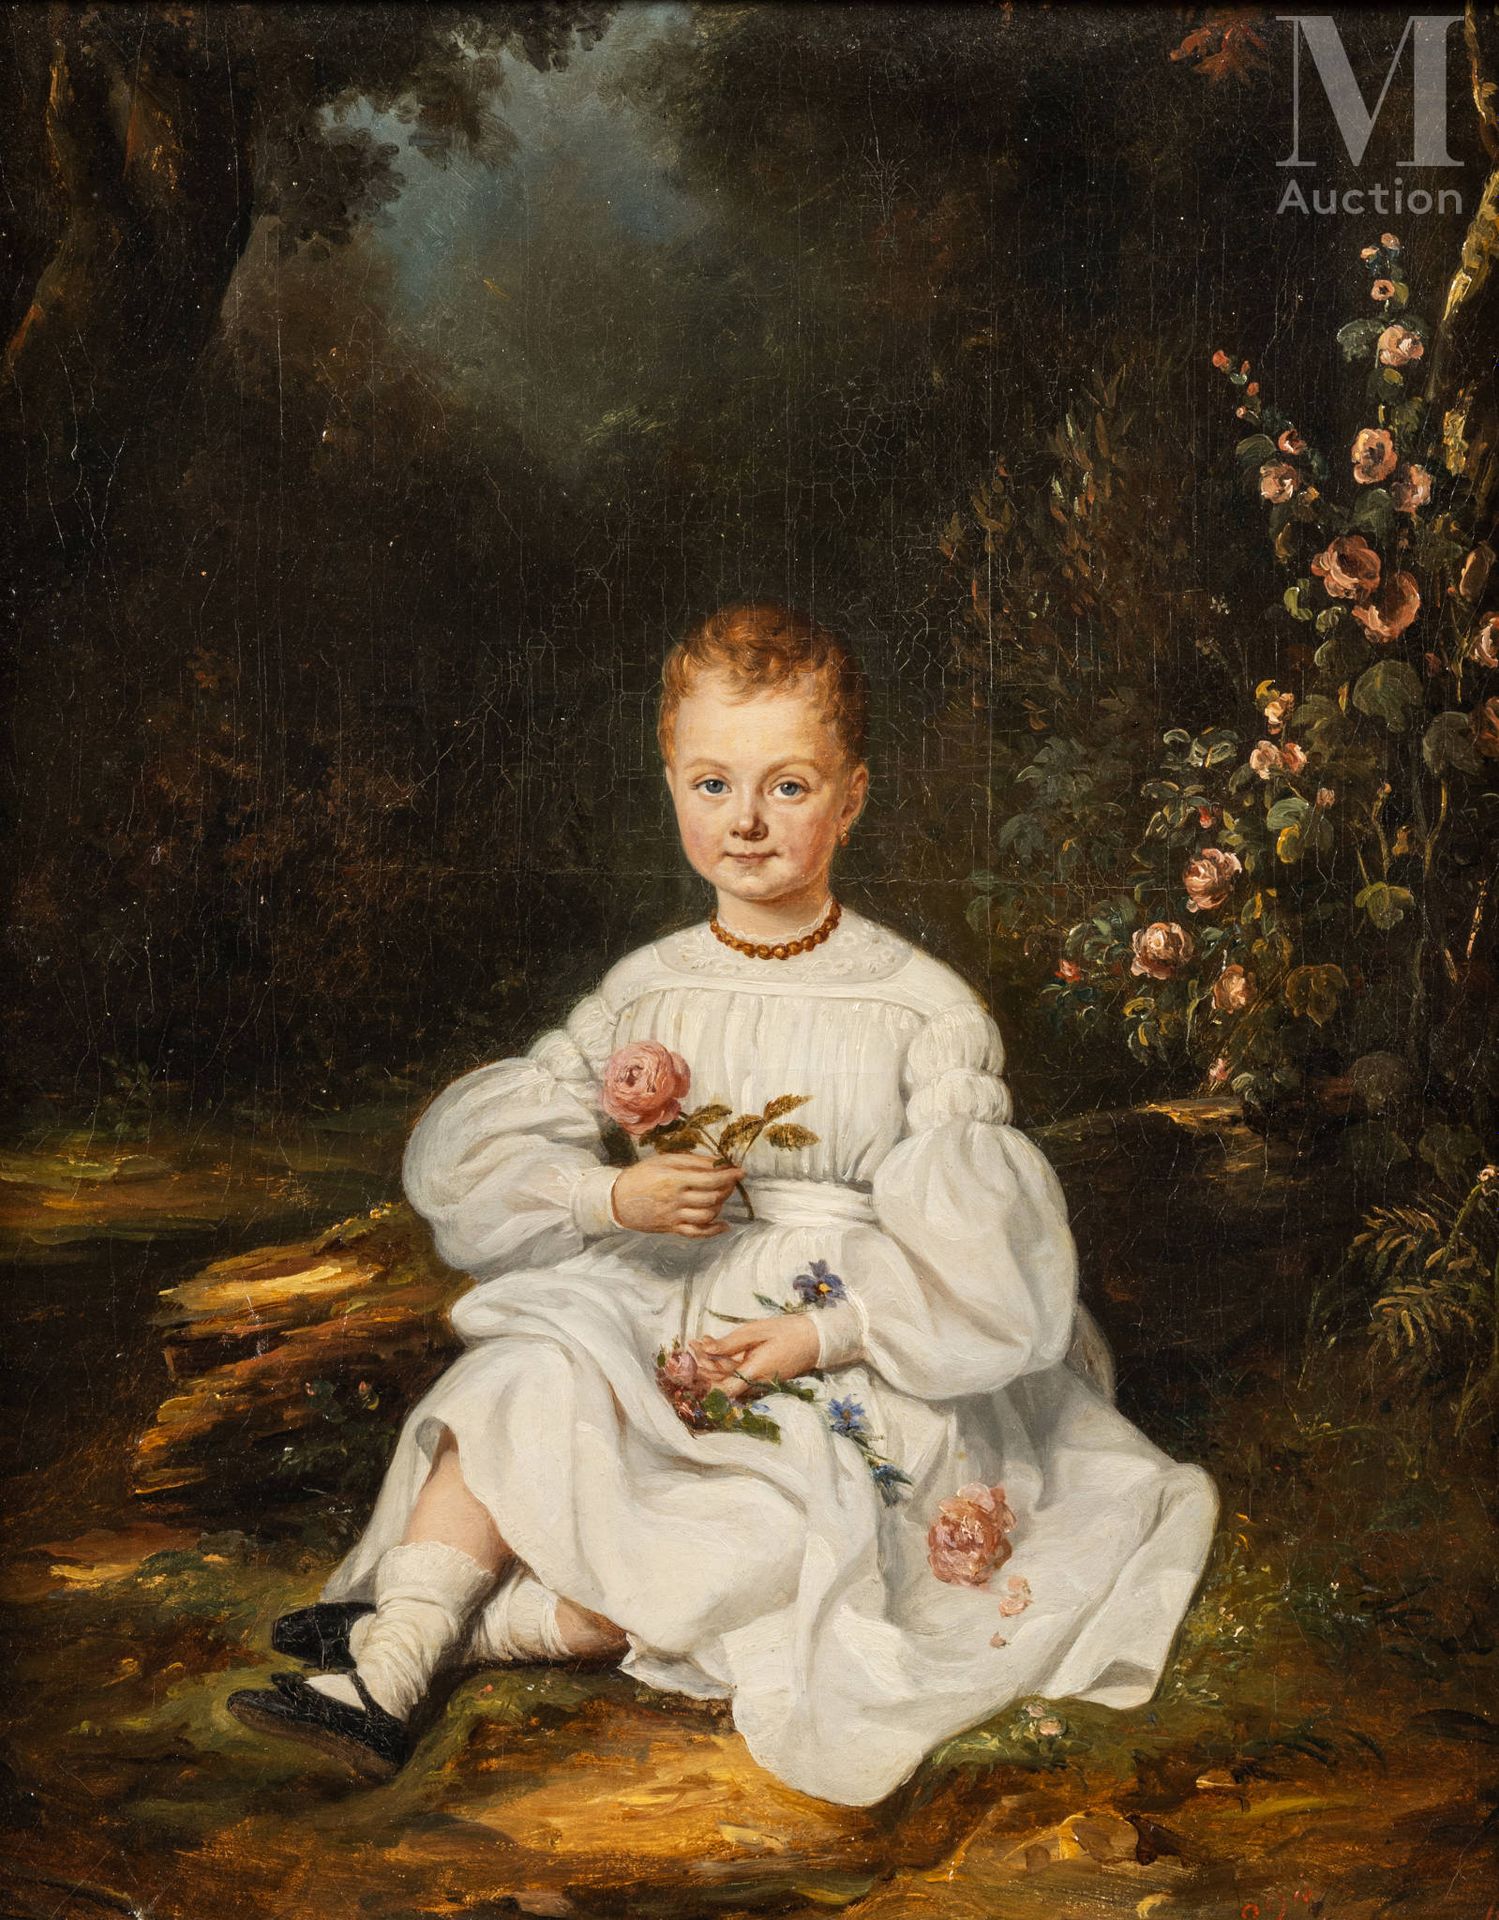 N. DANTEL, (Ecole FRANCAISE du XIXème siècle) Retrato de un niño con flores



E&hellip;